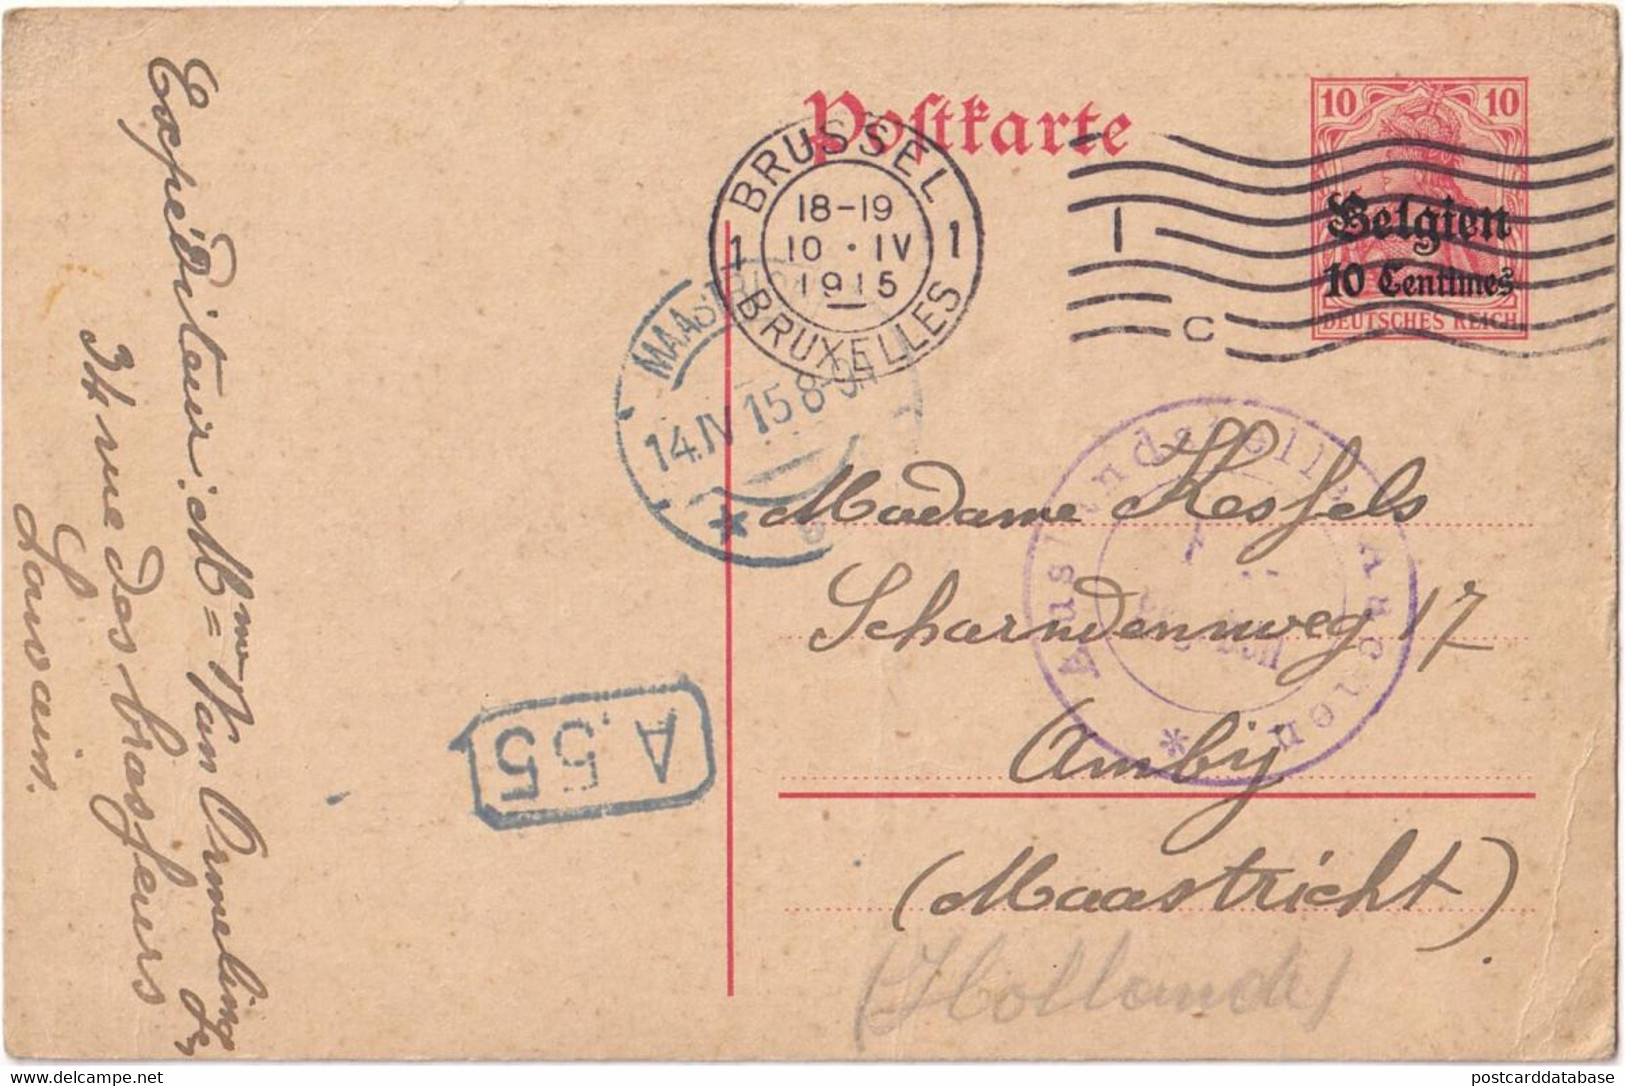 Stamped Stationery Belgium German Occupation - Sent From Brussel Bruxelles To Maastricht - Deutsche Besatzung